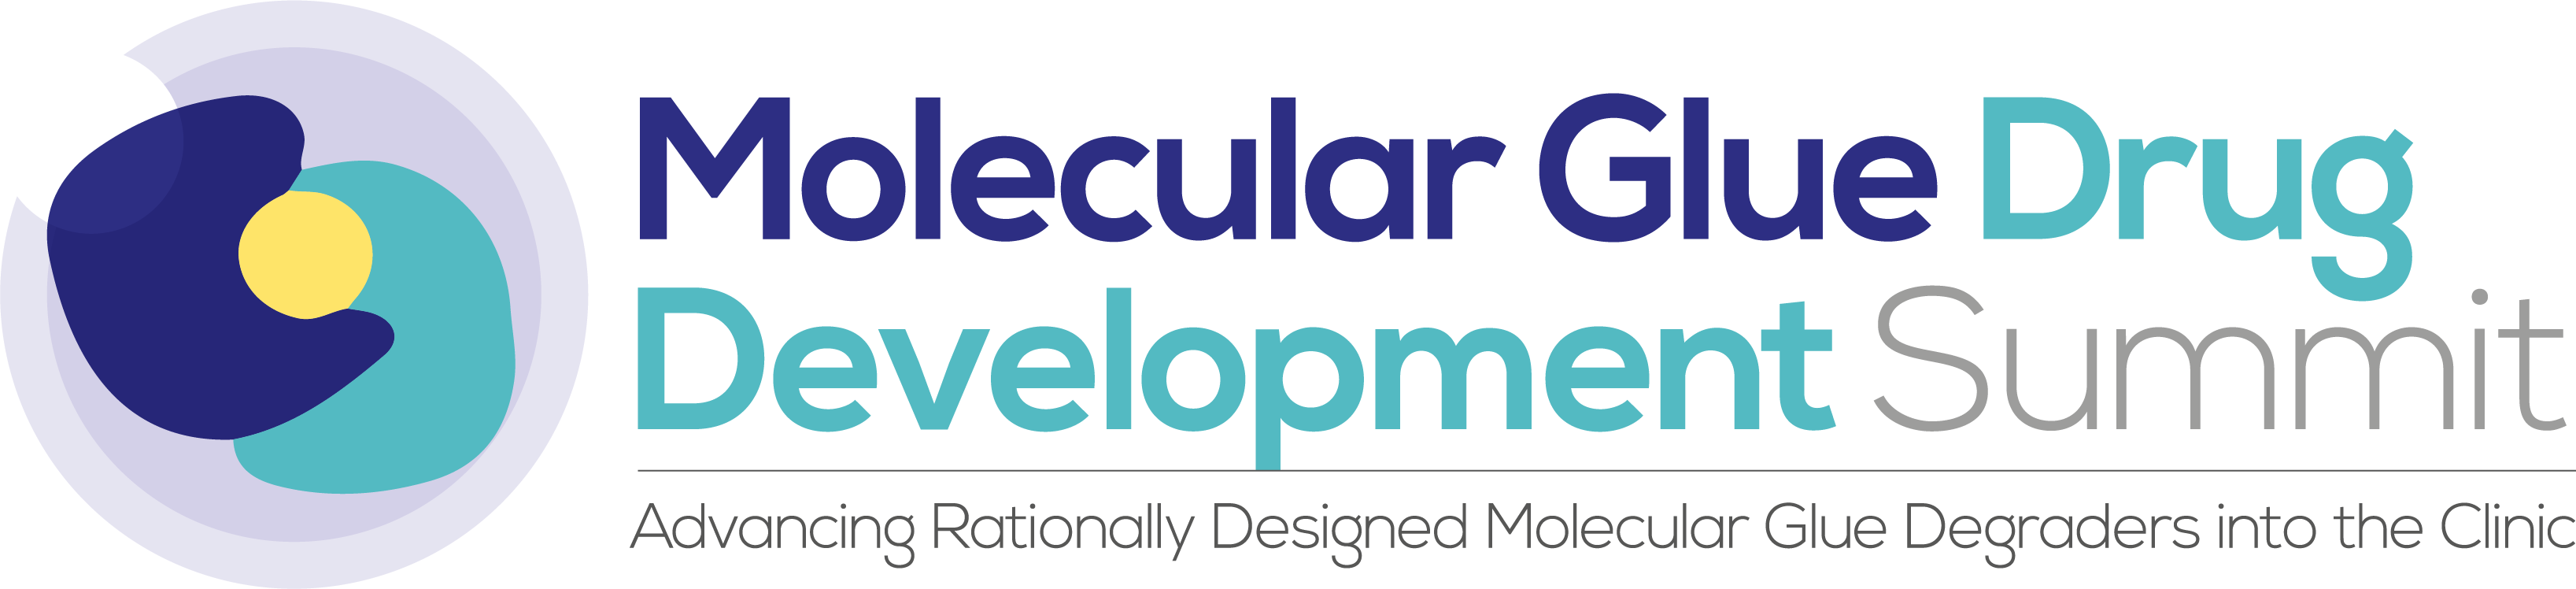 Molecular Glue Drug Development Summit